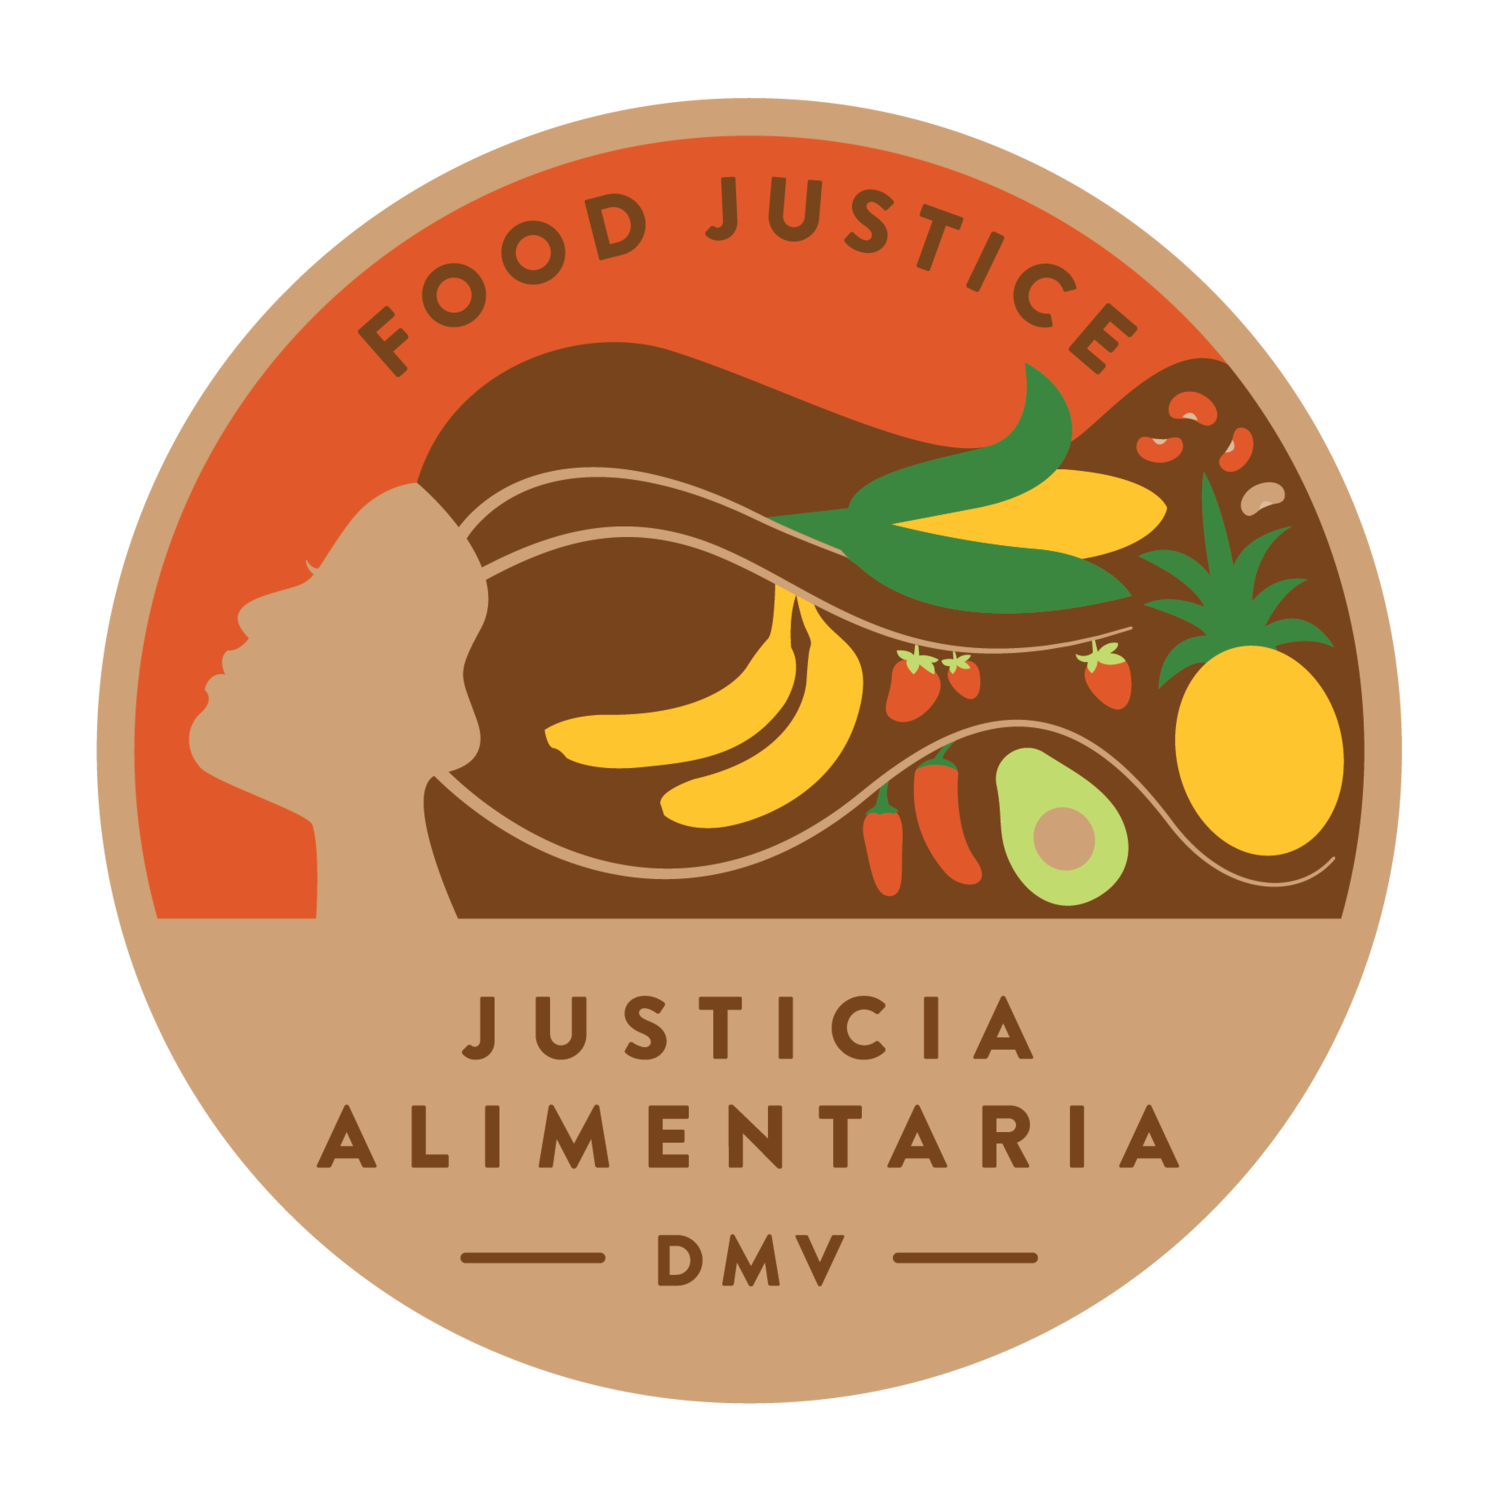 Food Justive DMV Logo